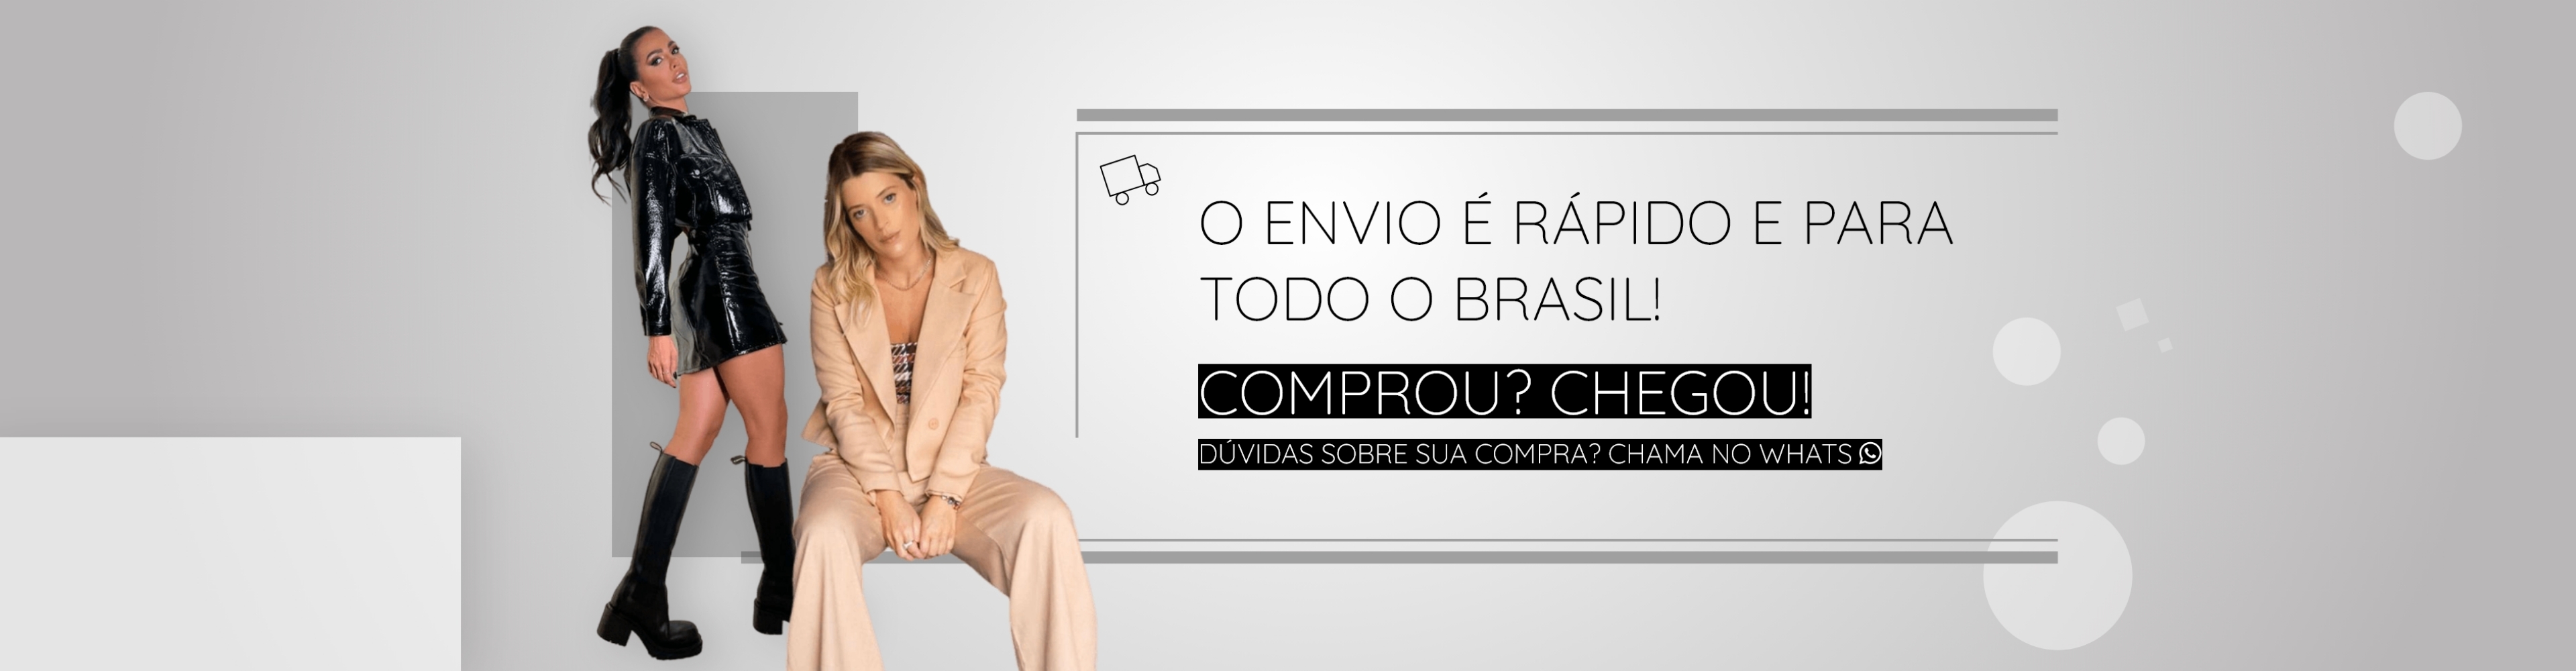 Banner 04 - Envio para todo o Brasil